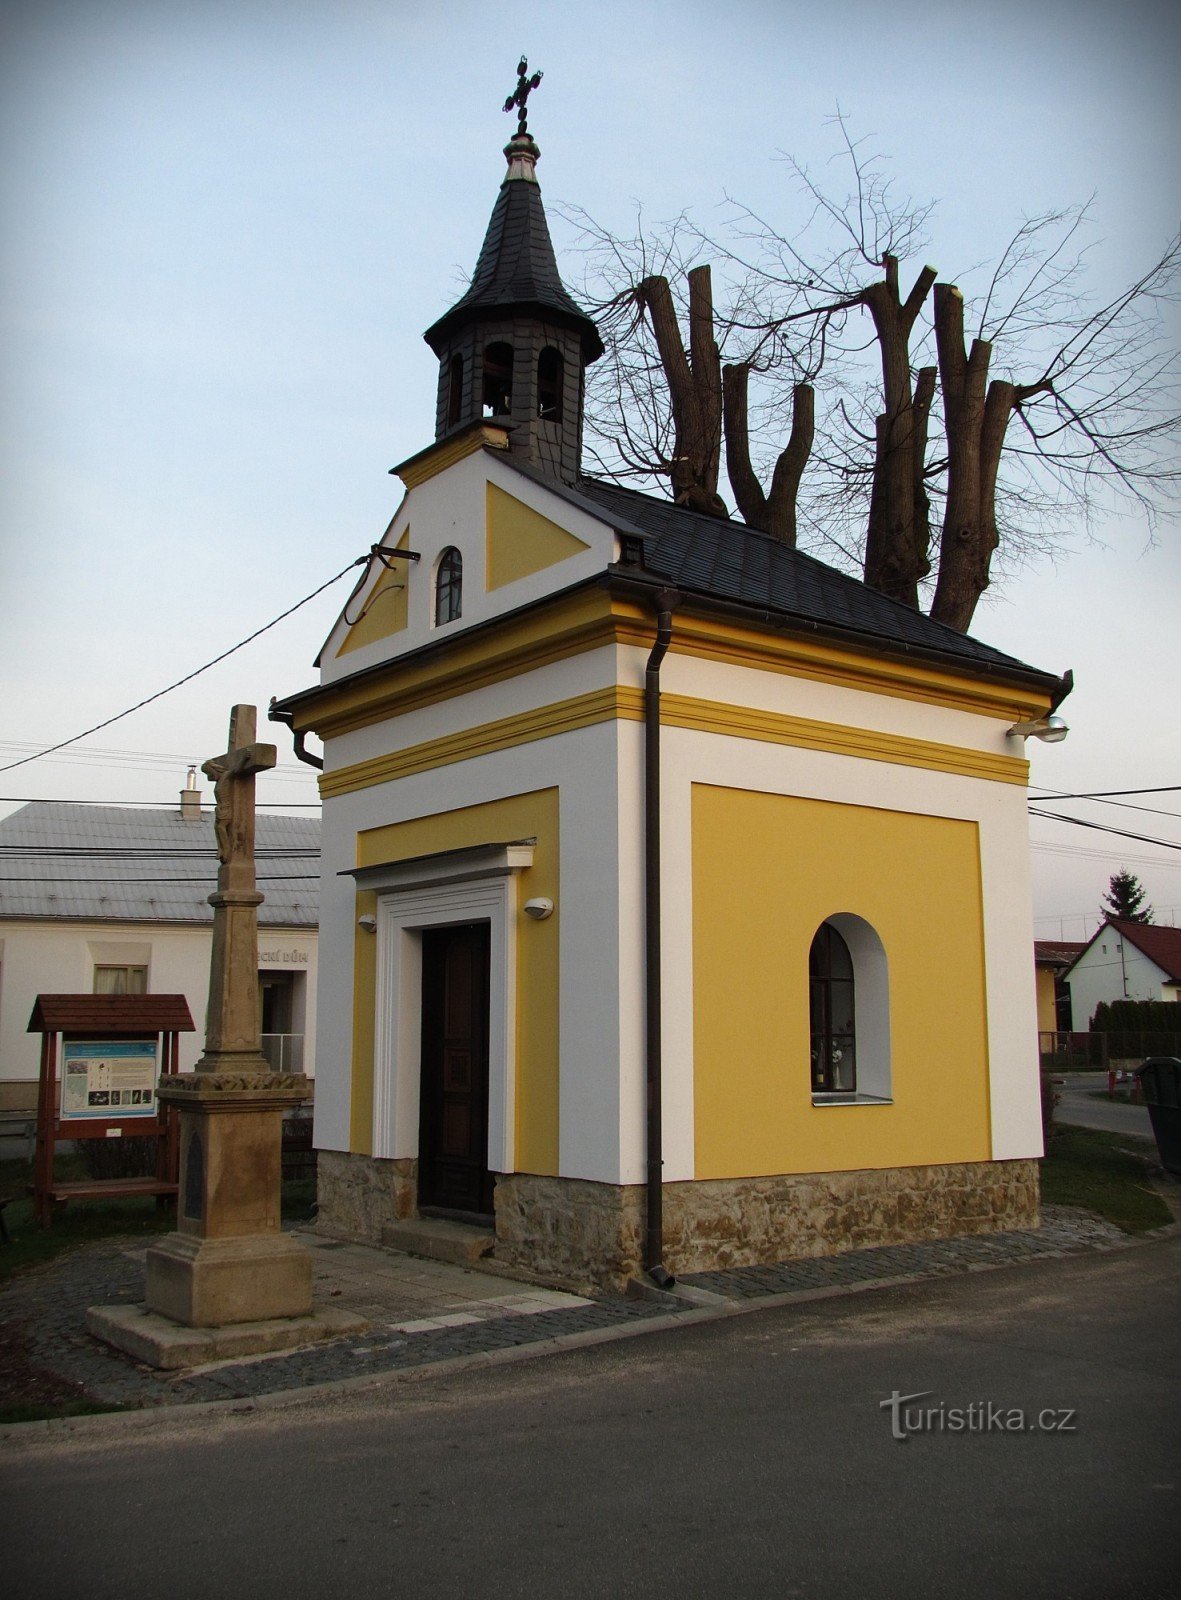 Lukoveček - luoghi e attrazioni del villaggio